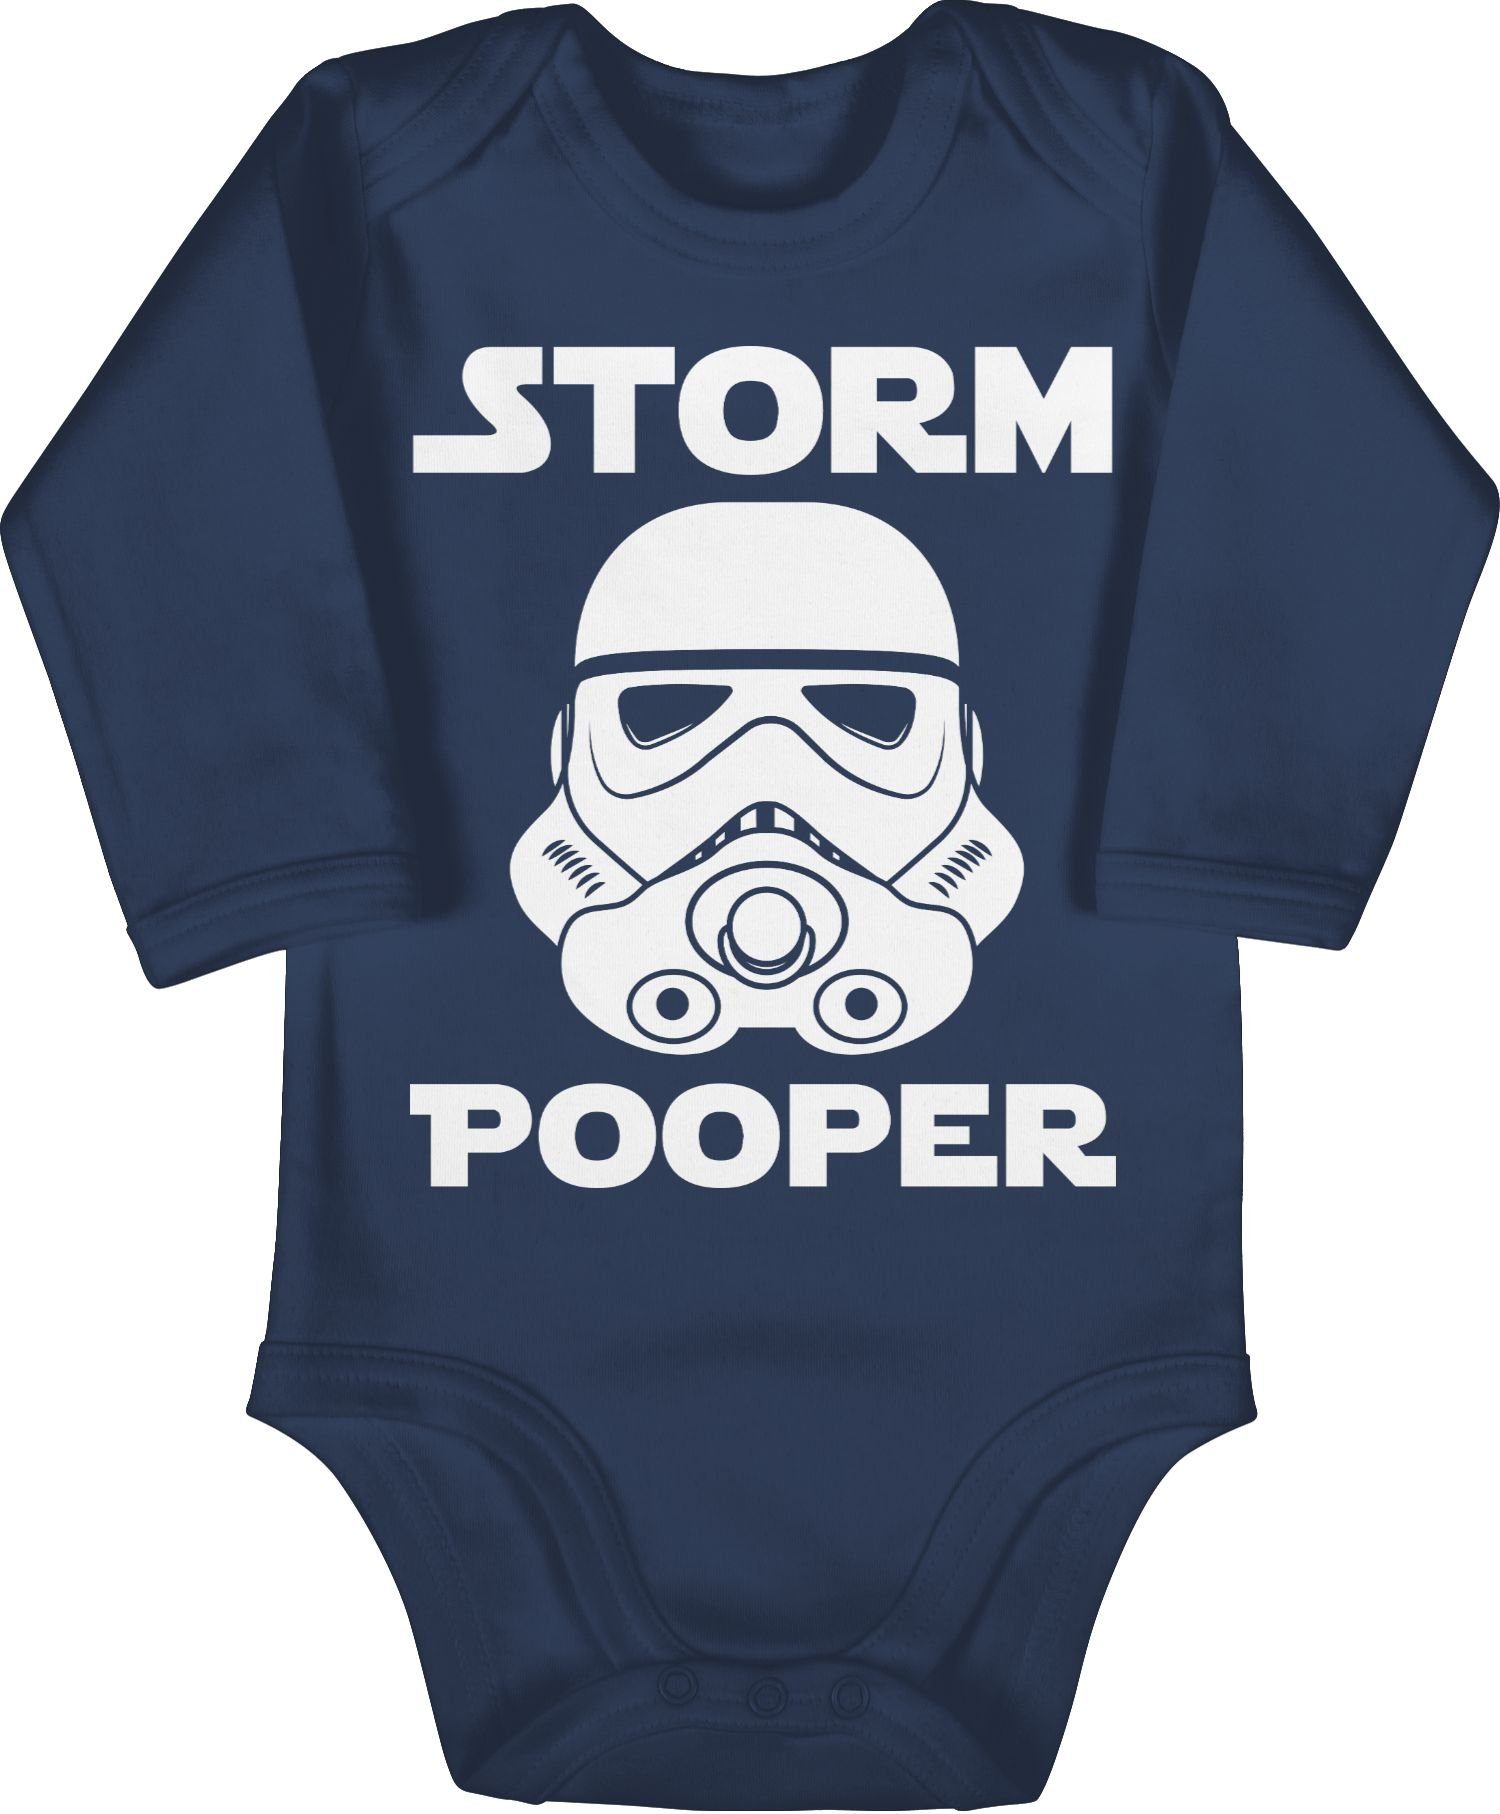 Shirtracer Pooper Baby Lustige Blau - 2 Stormpooper Navy Storm Babygeschenke Shirtbody Sprüche